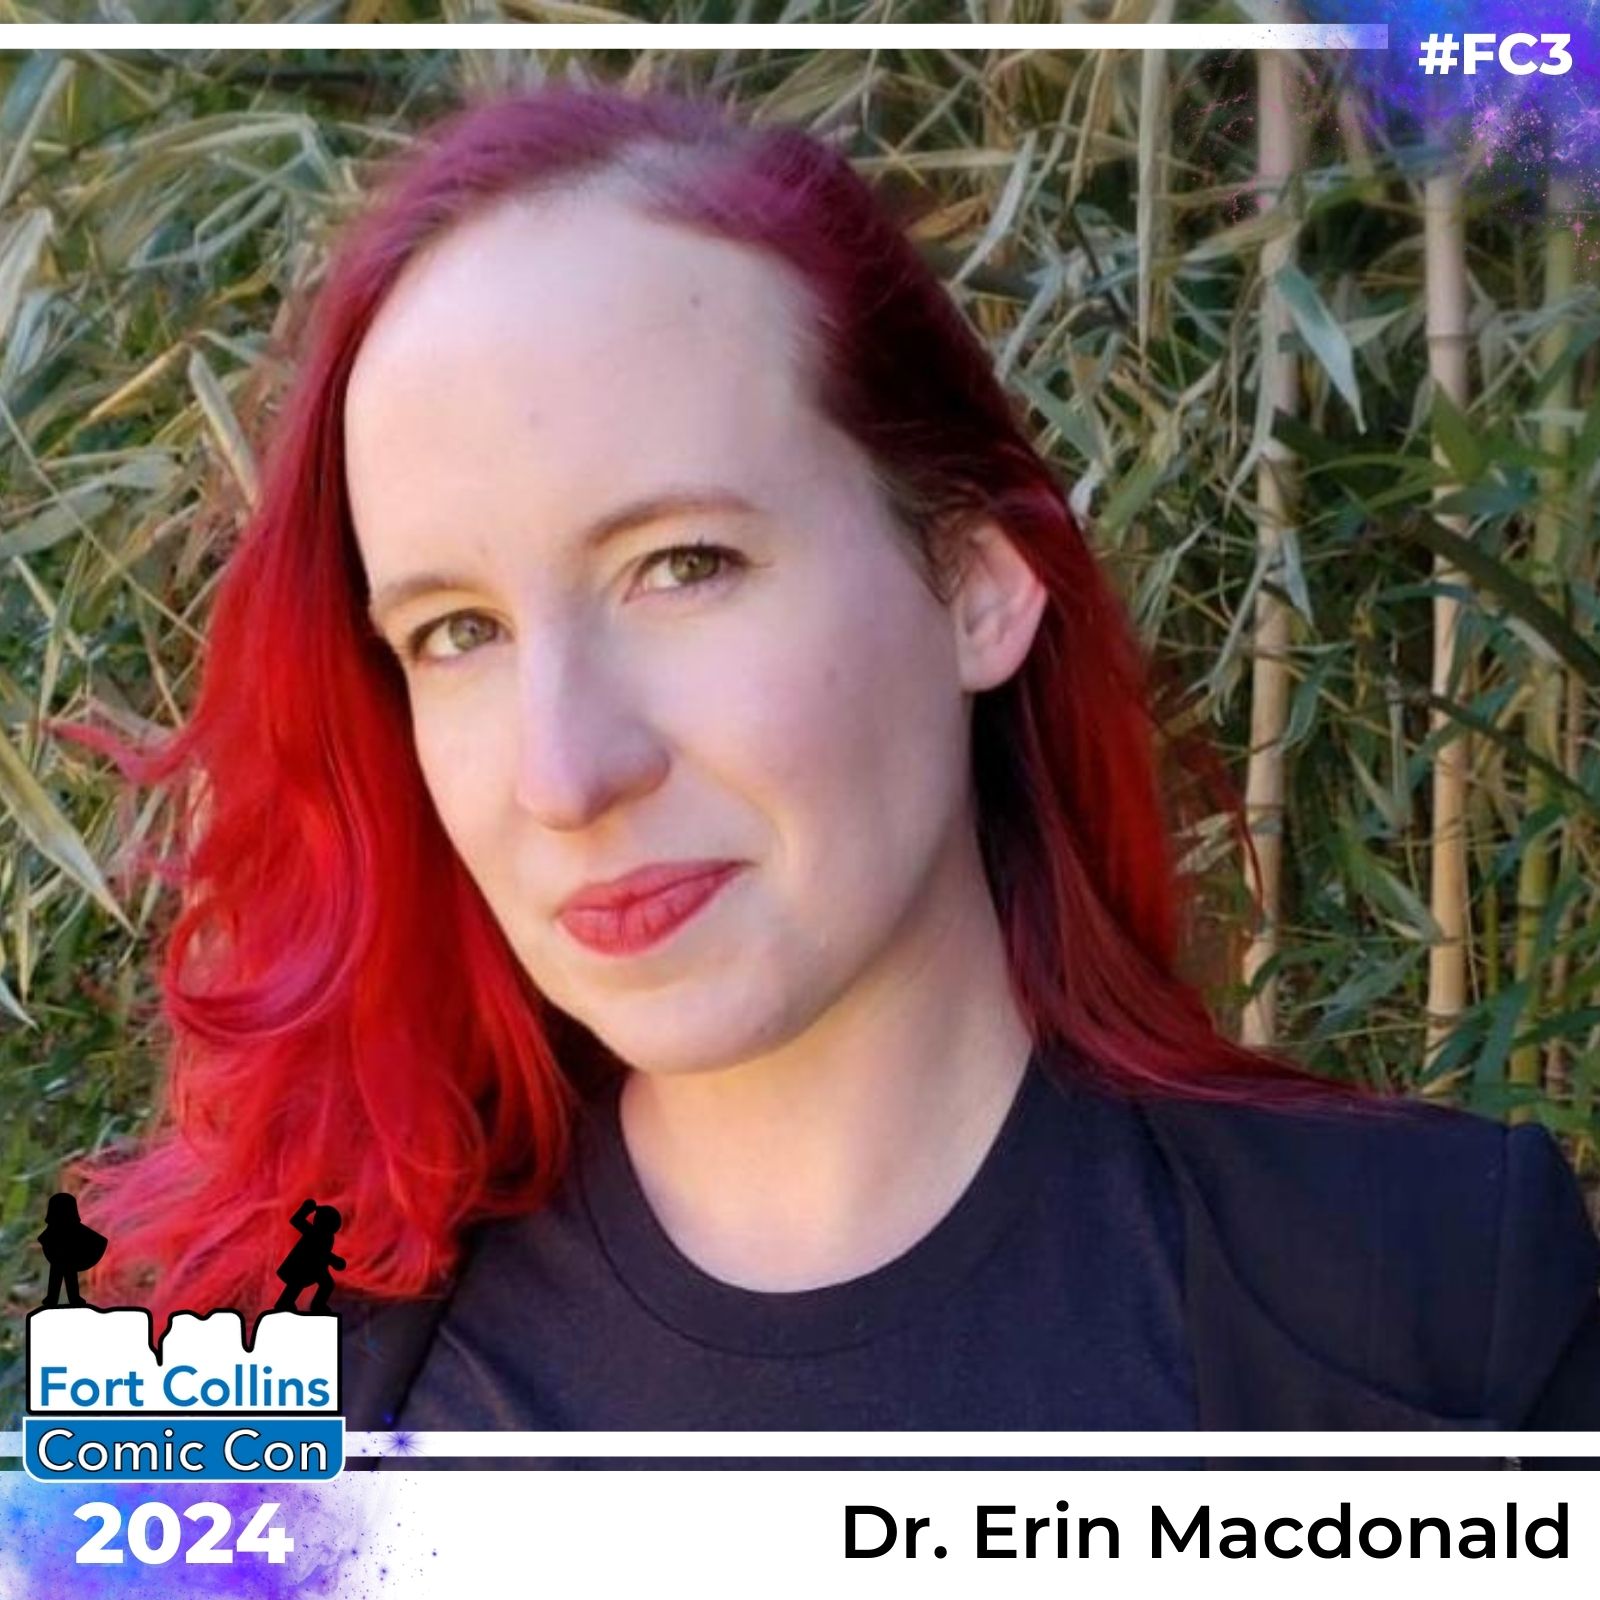 Dr. Erin Macdonald